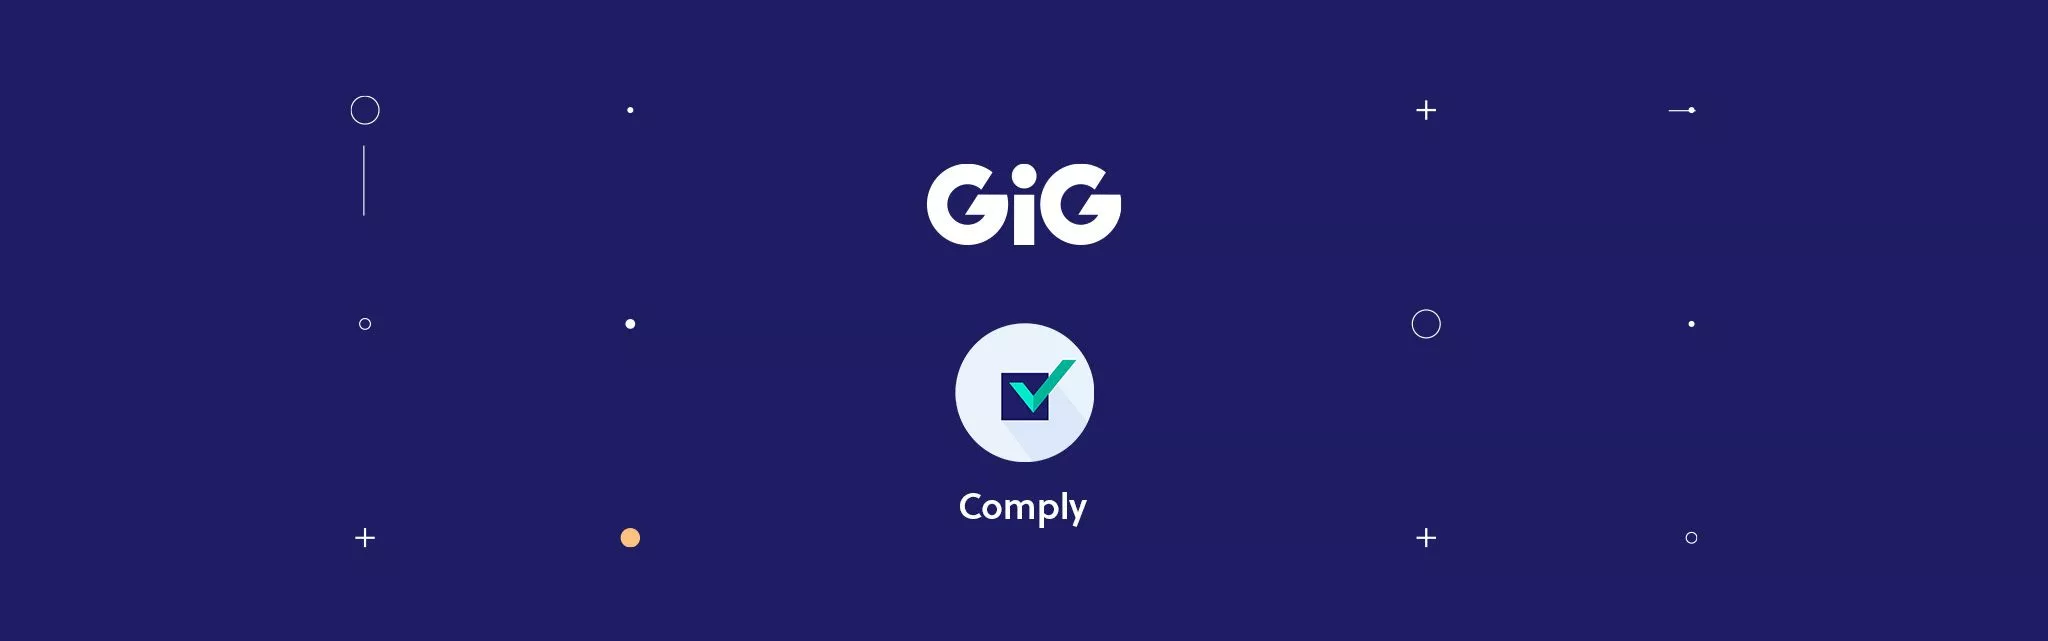 gig-comply-logo